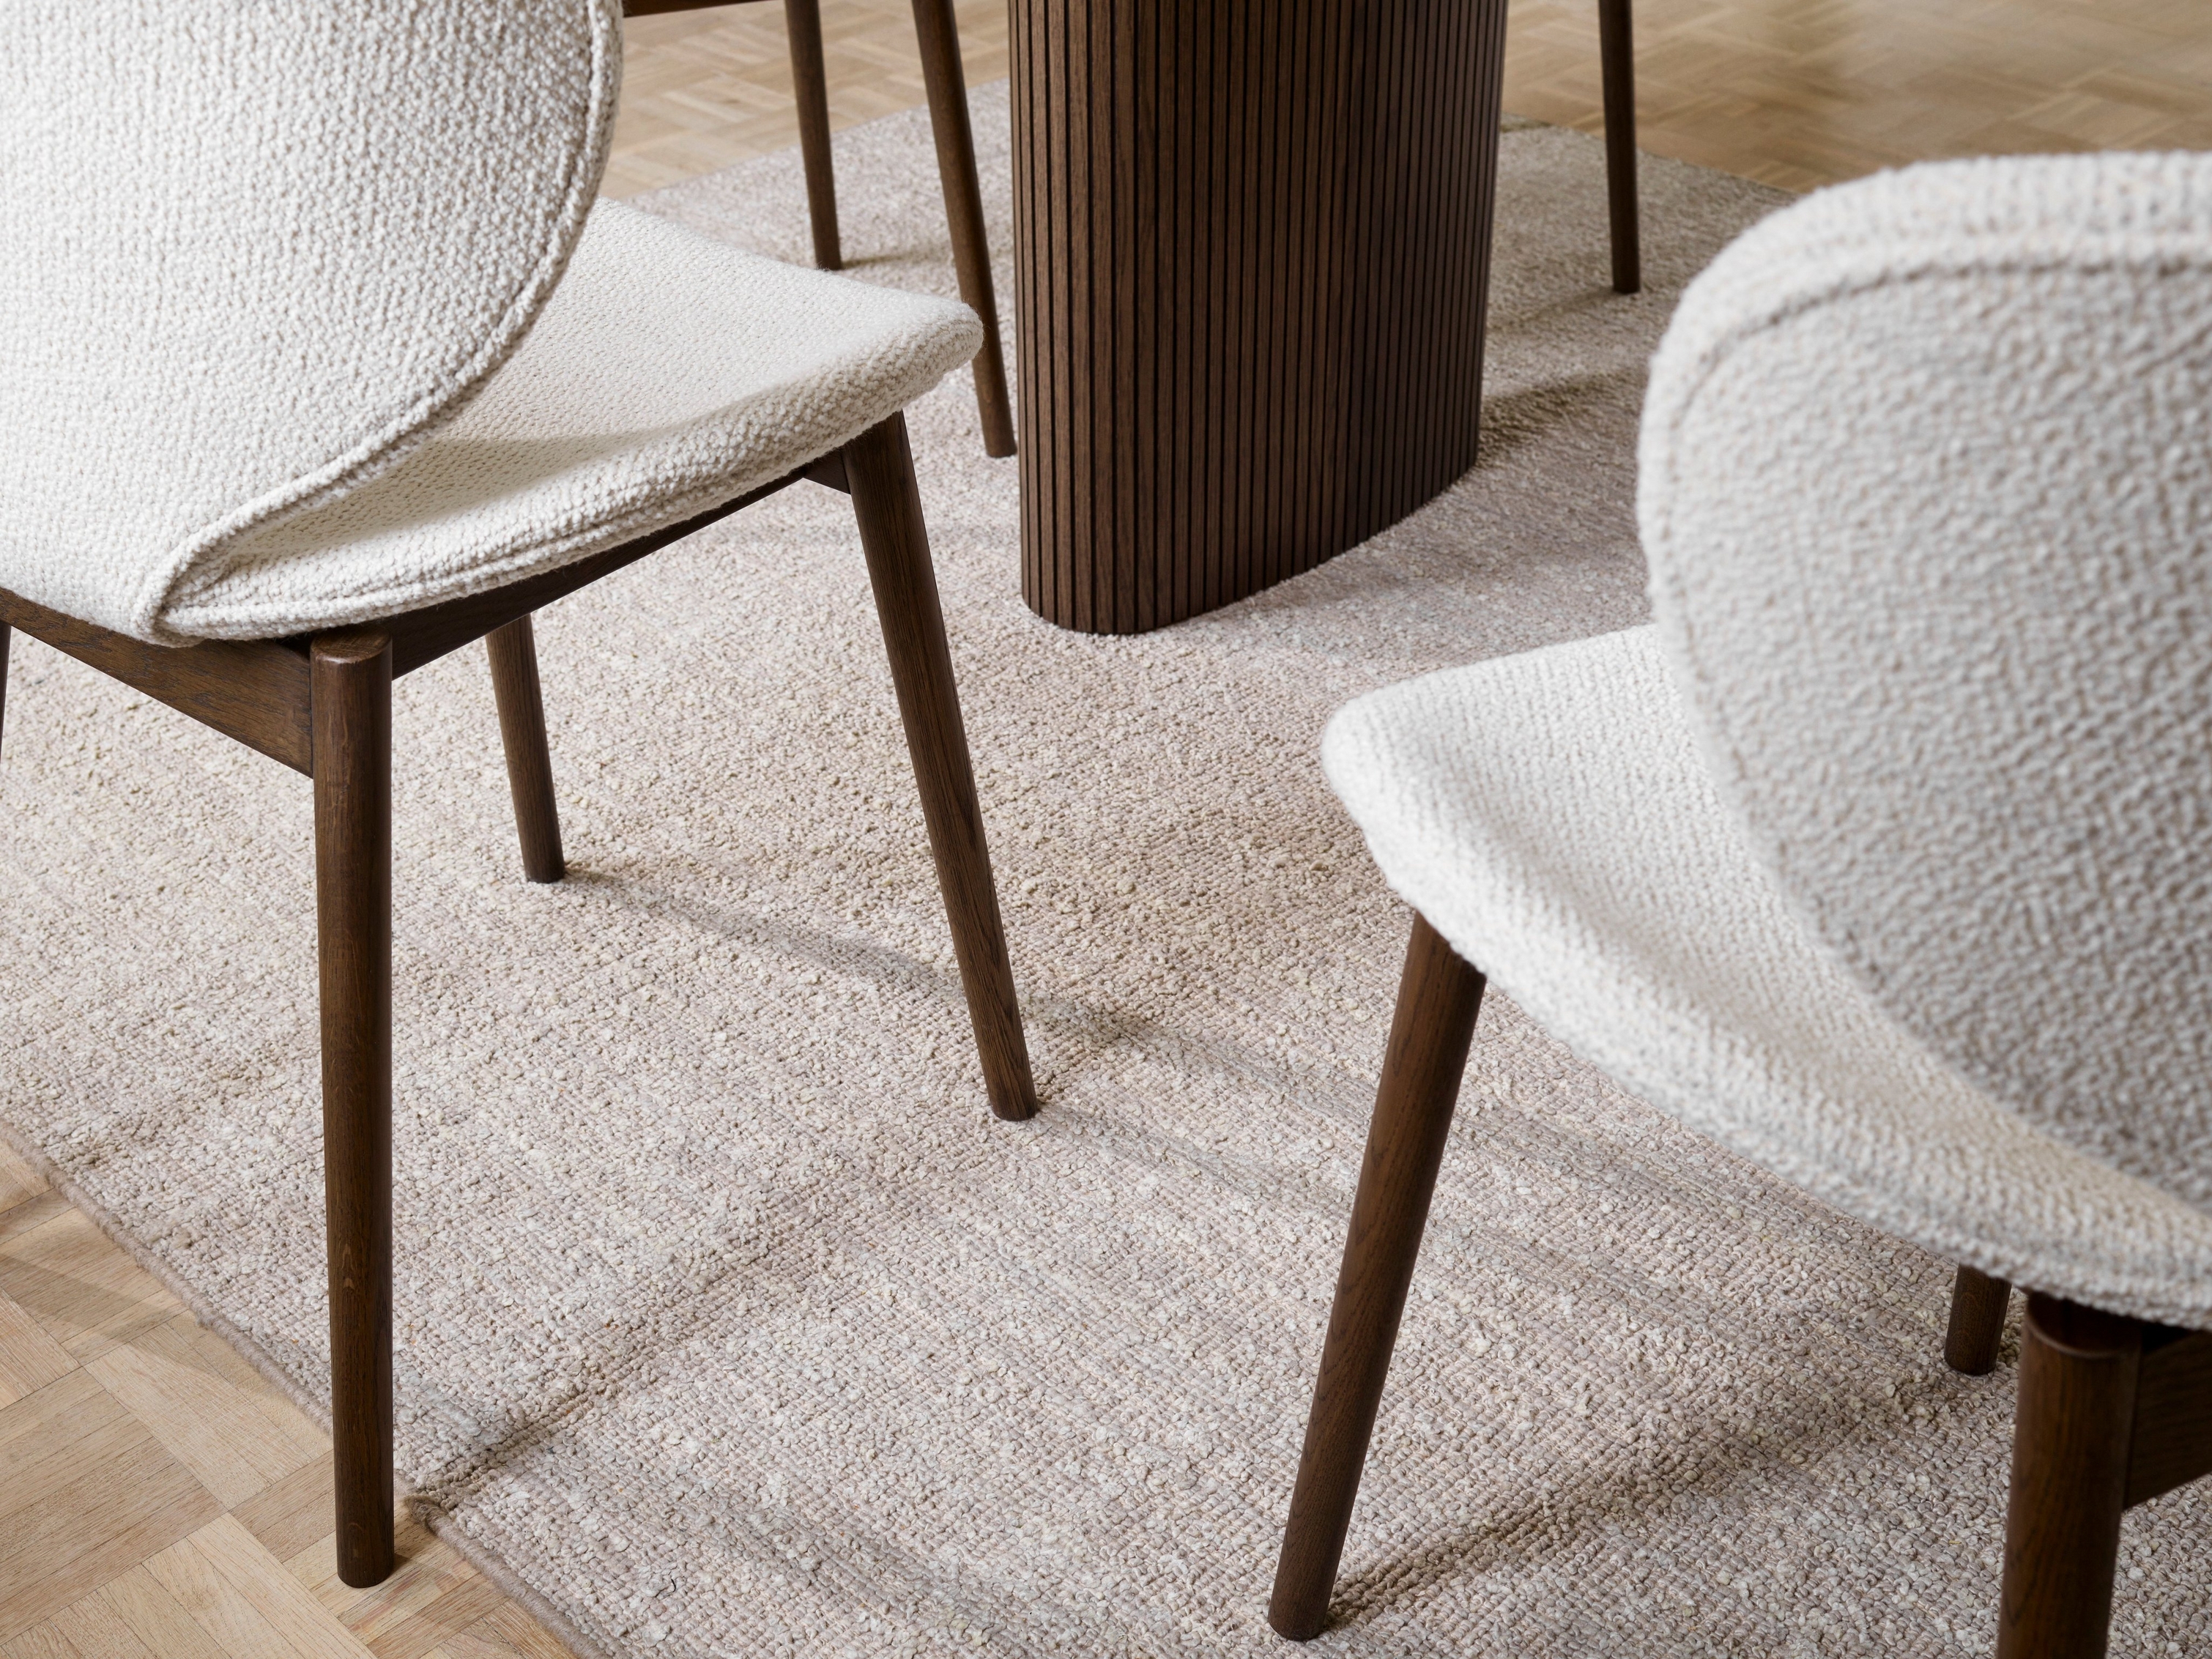 Strukturerade Hamilton-stolar och matta med träbord, med fokus på golvdetaljer.